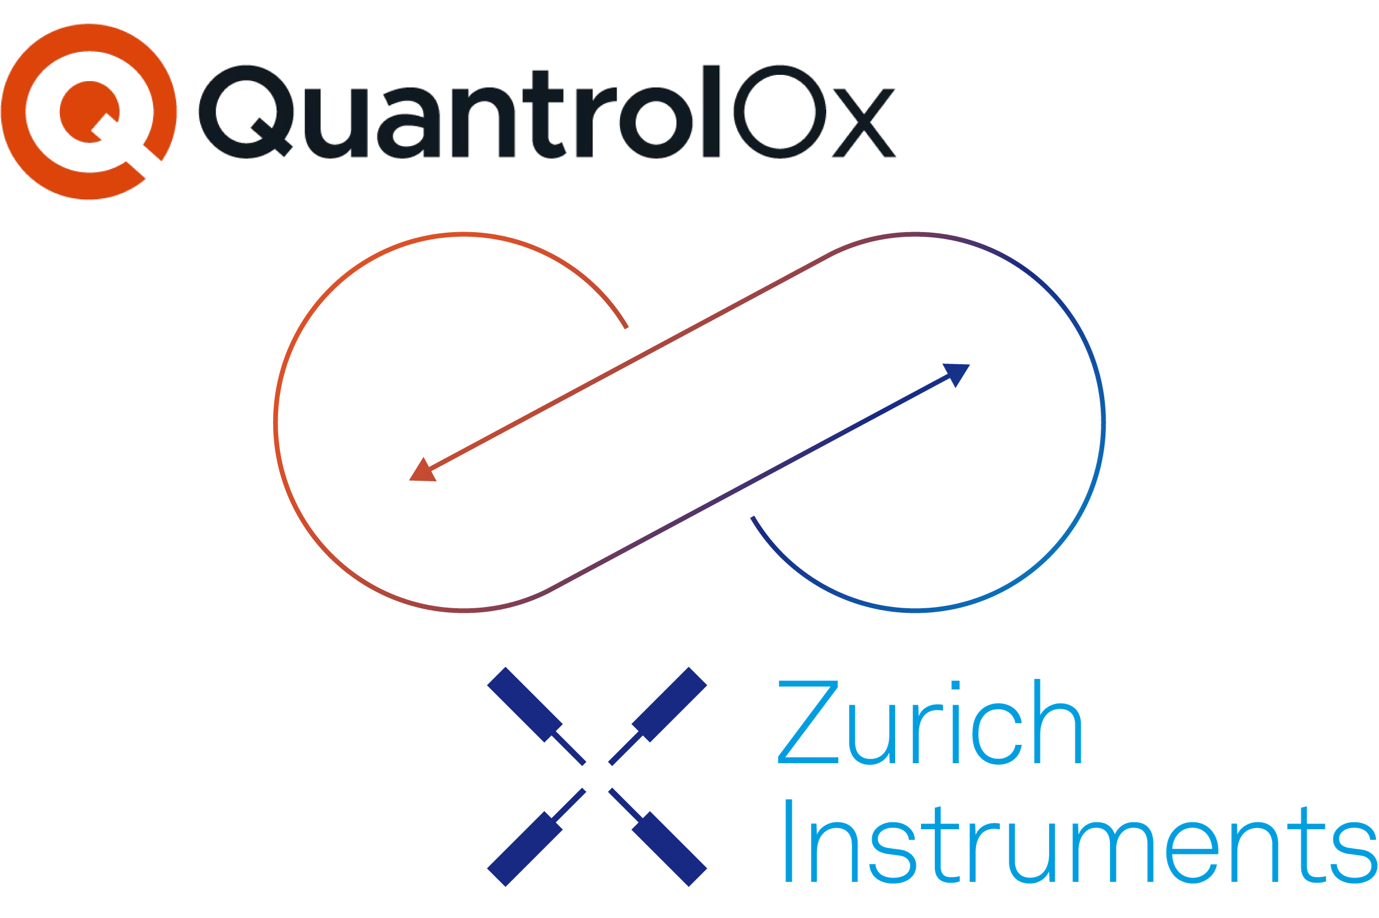 Image Credit: Zurich Instruments